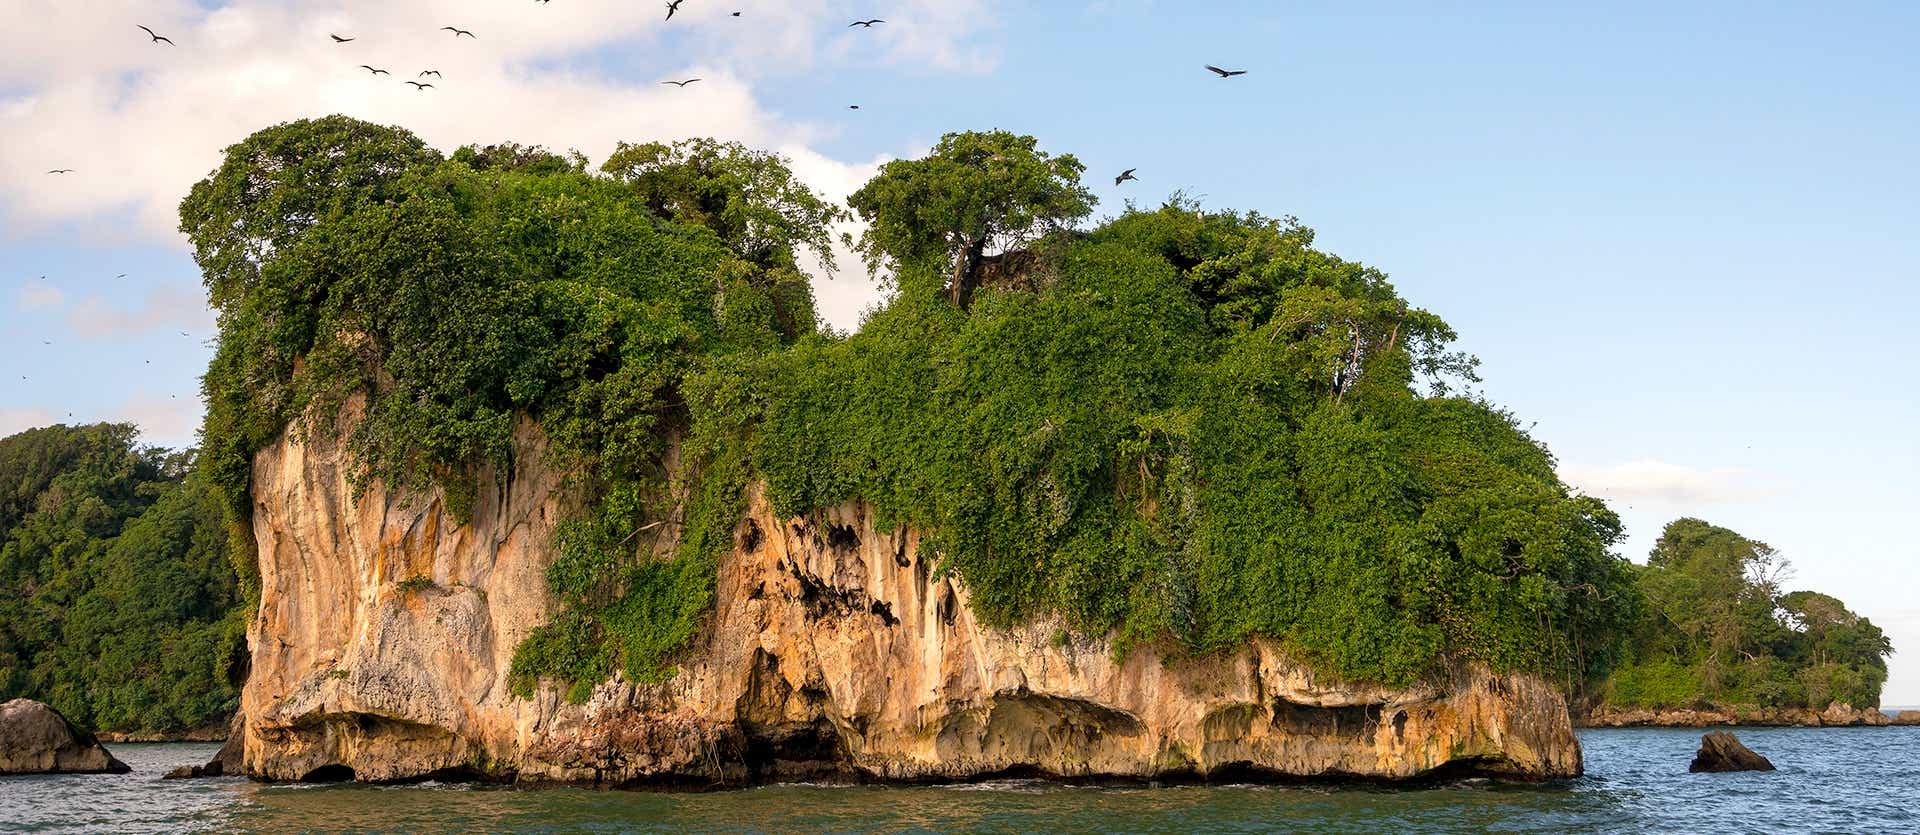 Parque Nacional Los Haitises <span class="iconos separador"></span> Península de Samaná